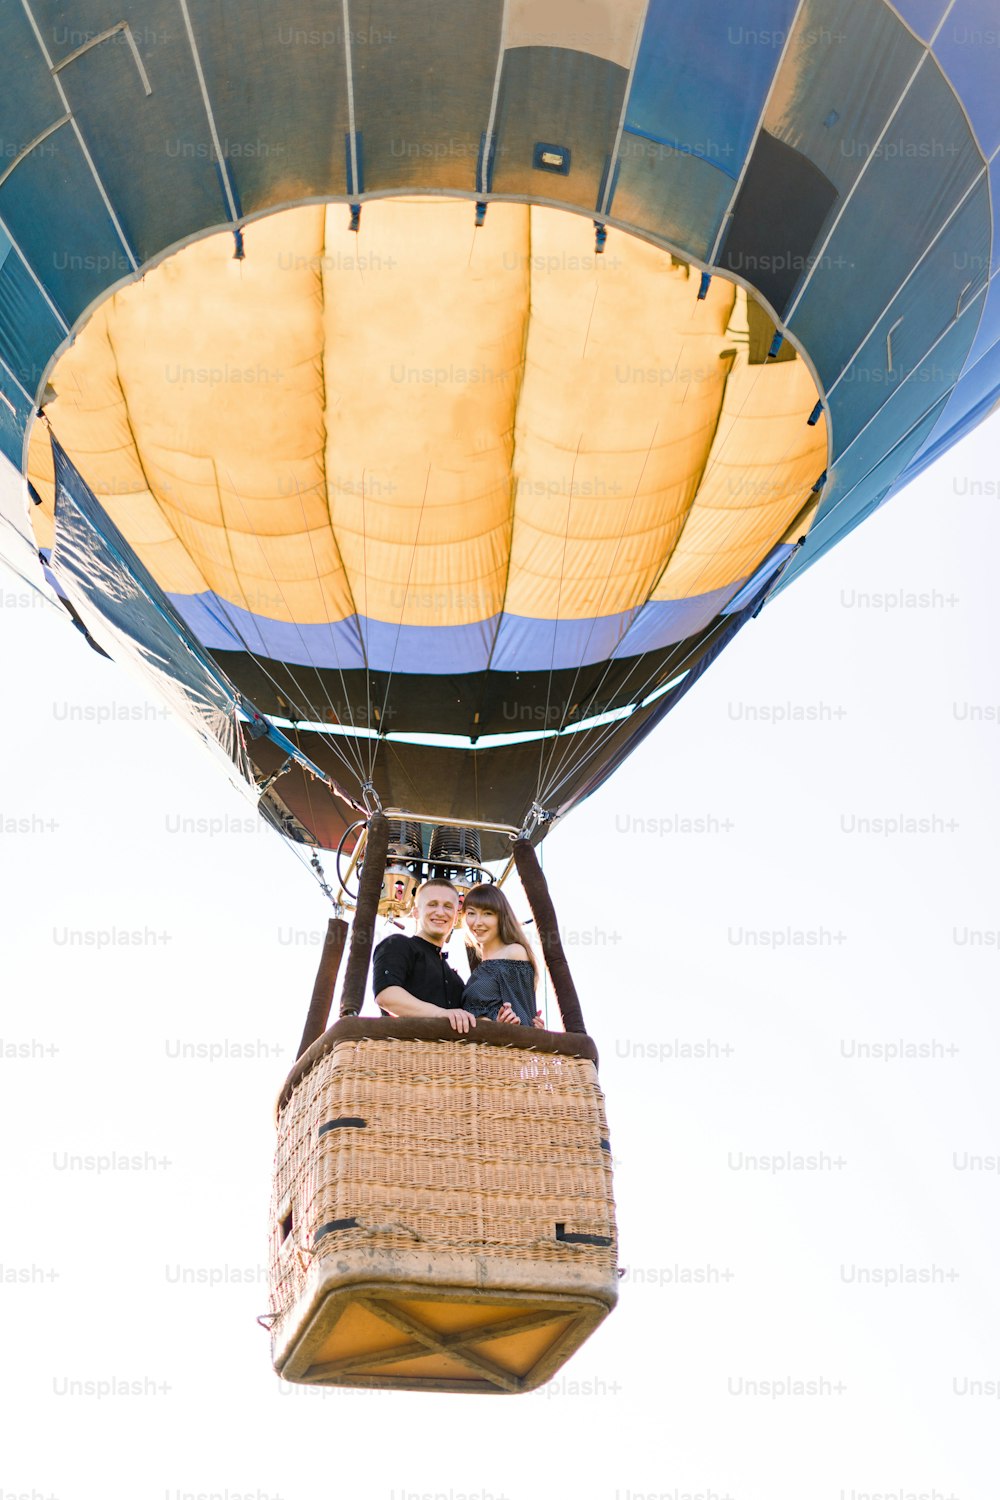 Hermosa pareja romántica abrazada en la canasta del globo aerostático, volando en la tarde soleada de verano. Aventura romántica, concepto de amor en vuelo. Vista desde tierra.